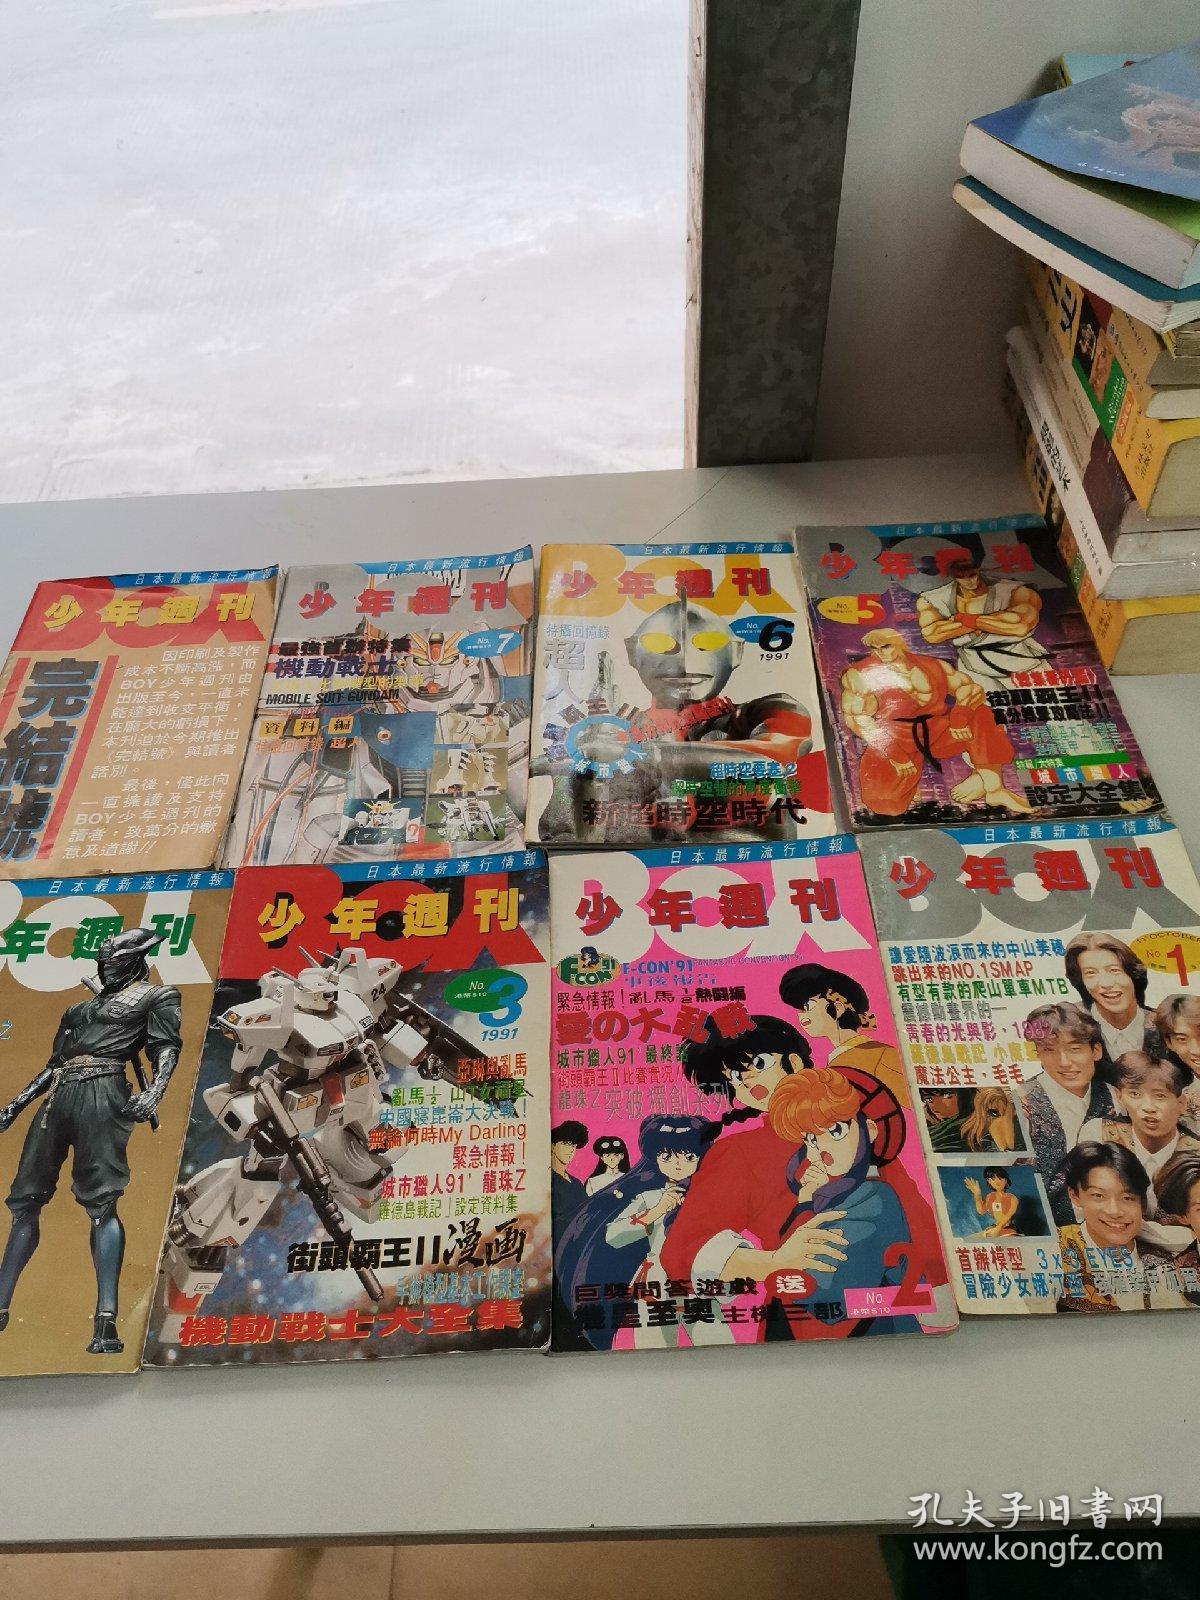 少年周刊1991年 NO.1 NO.2 NO.3 NO.4 NO5. NO.6 NO.7和少年周刊完结号 共8册